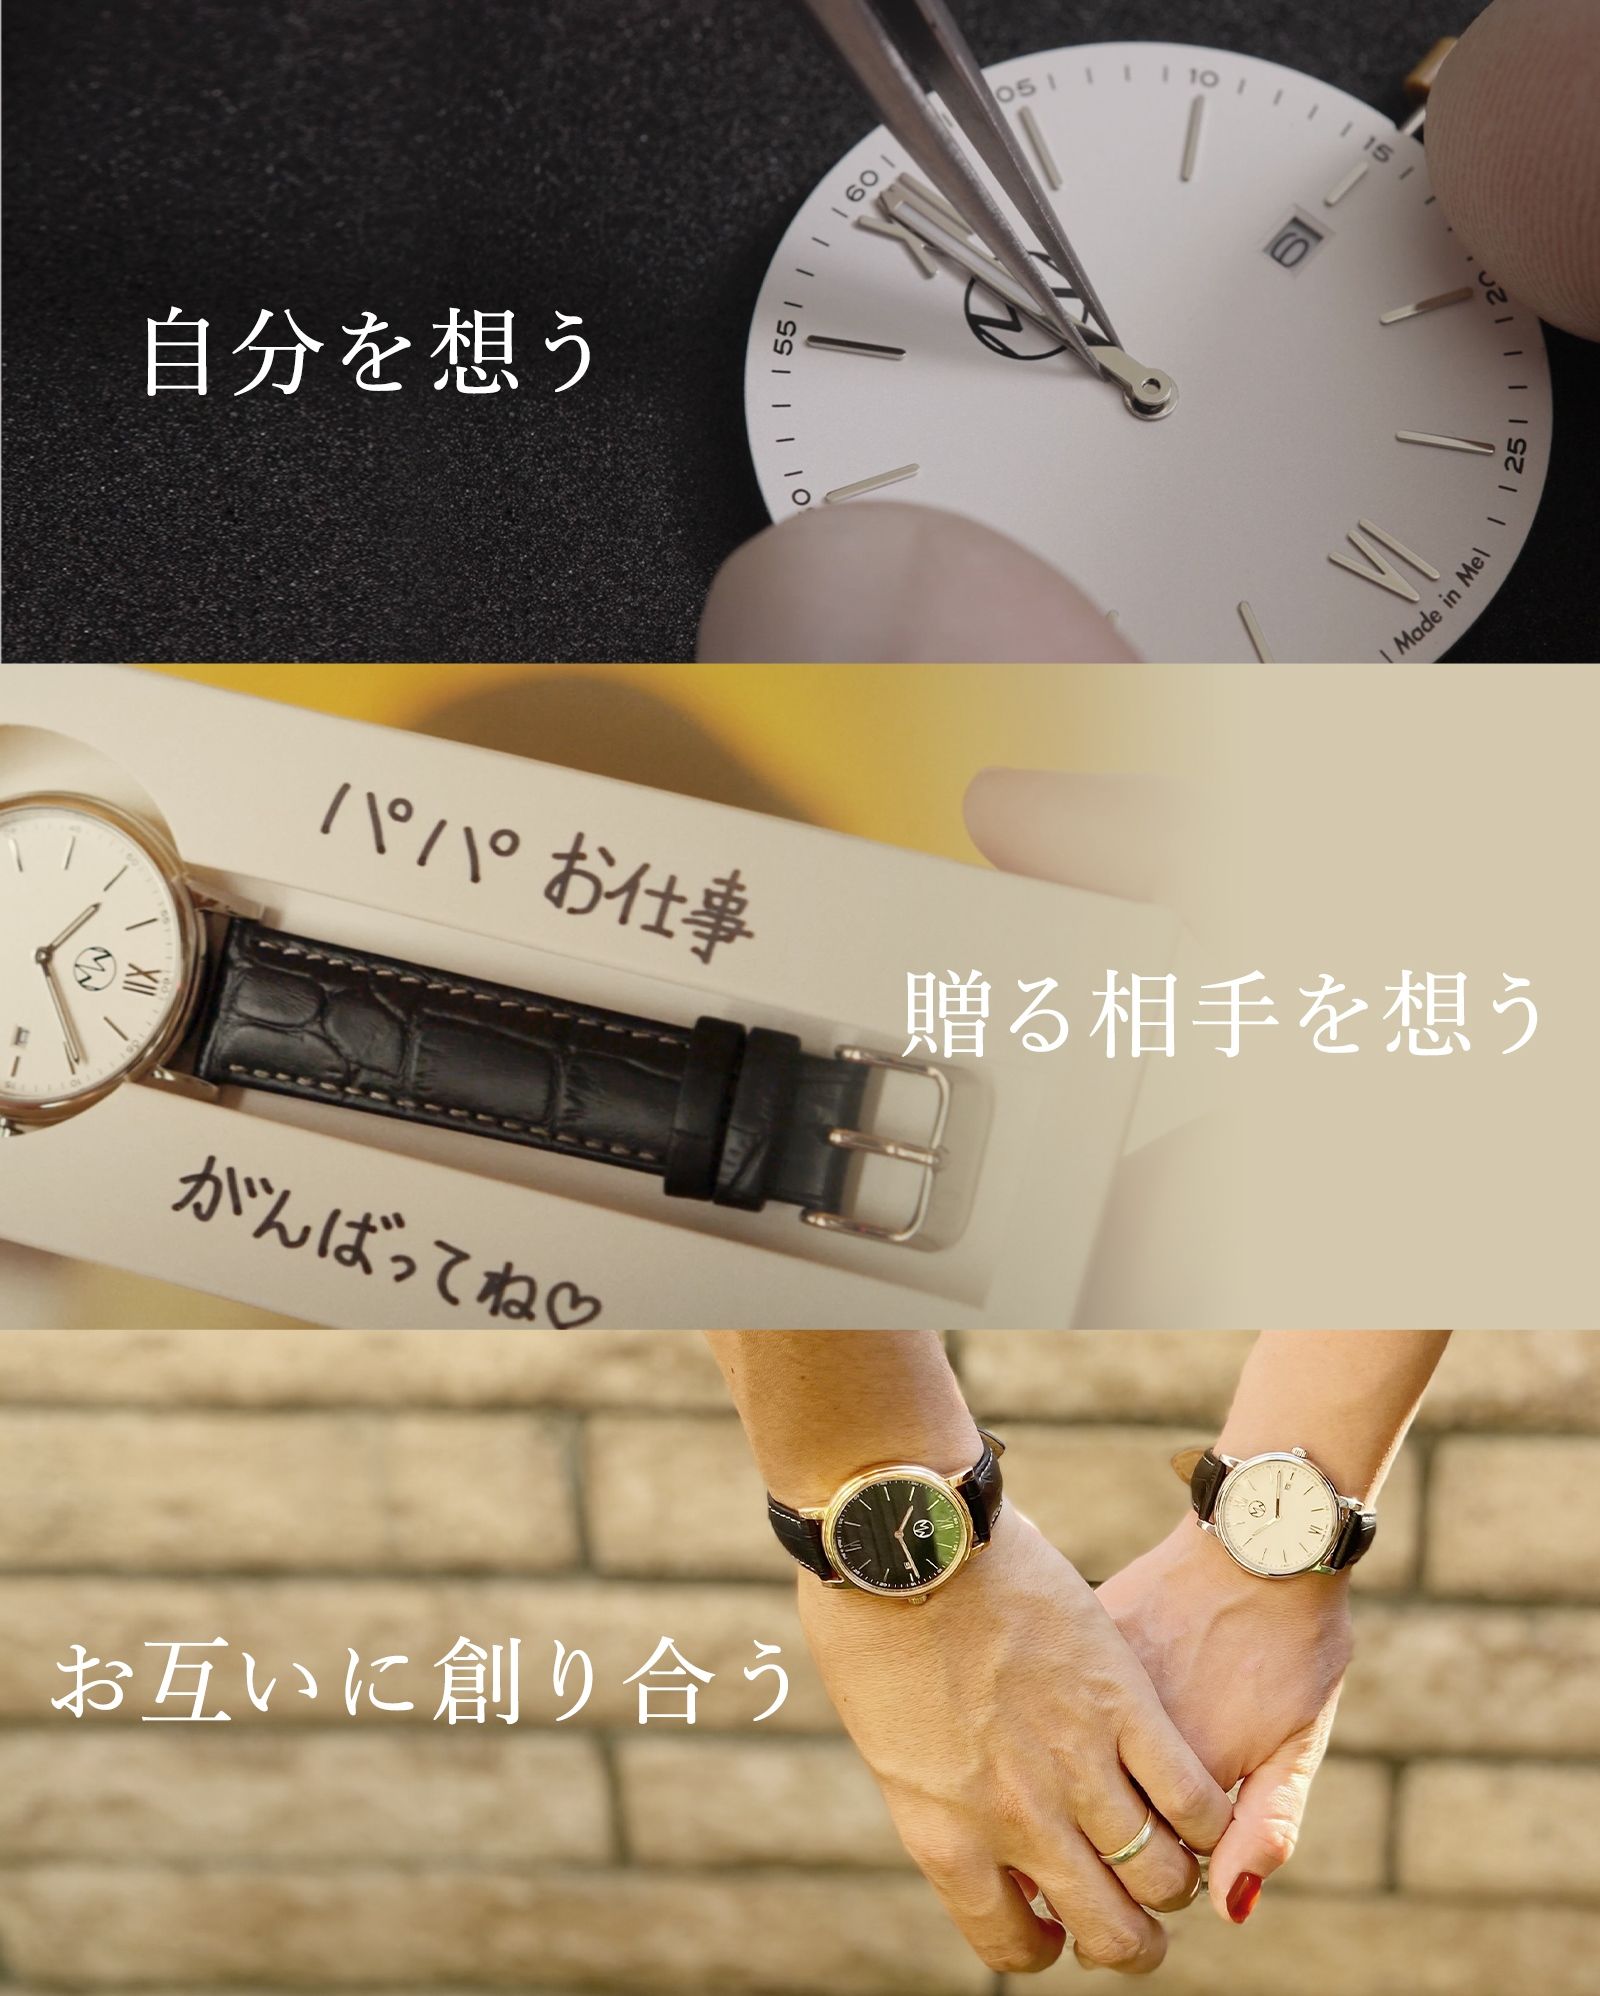 パーツを選んで創る腕時計DIY WATCH【Made in Me】 | Glimpse [グリンプス]